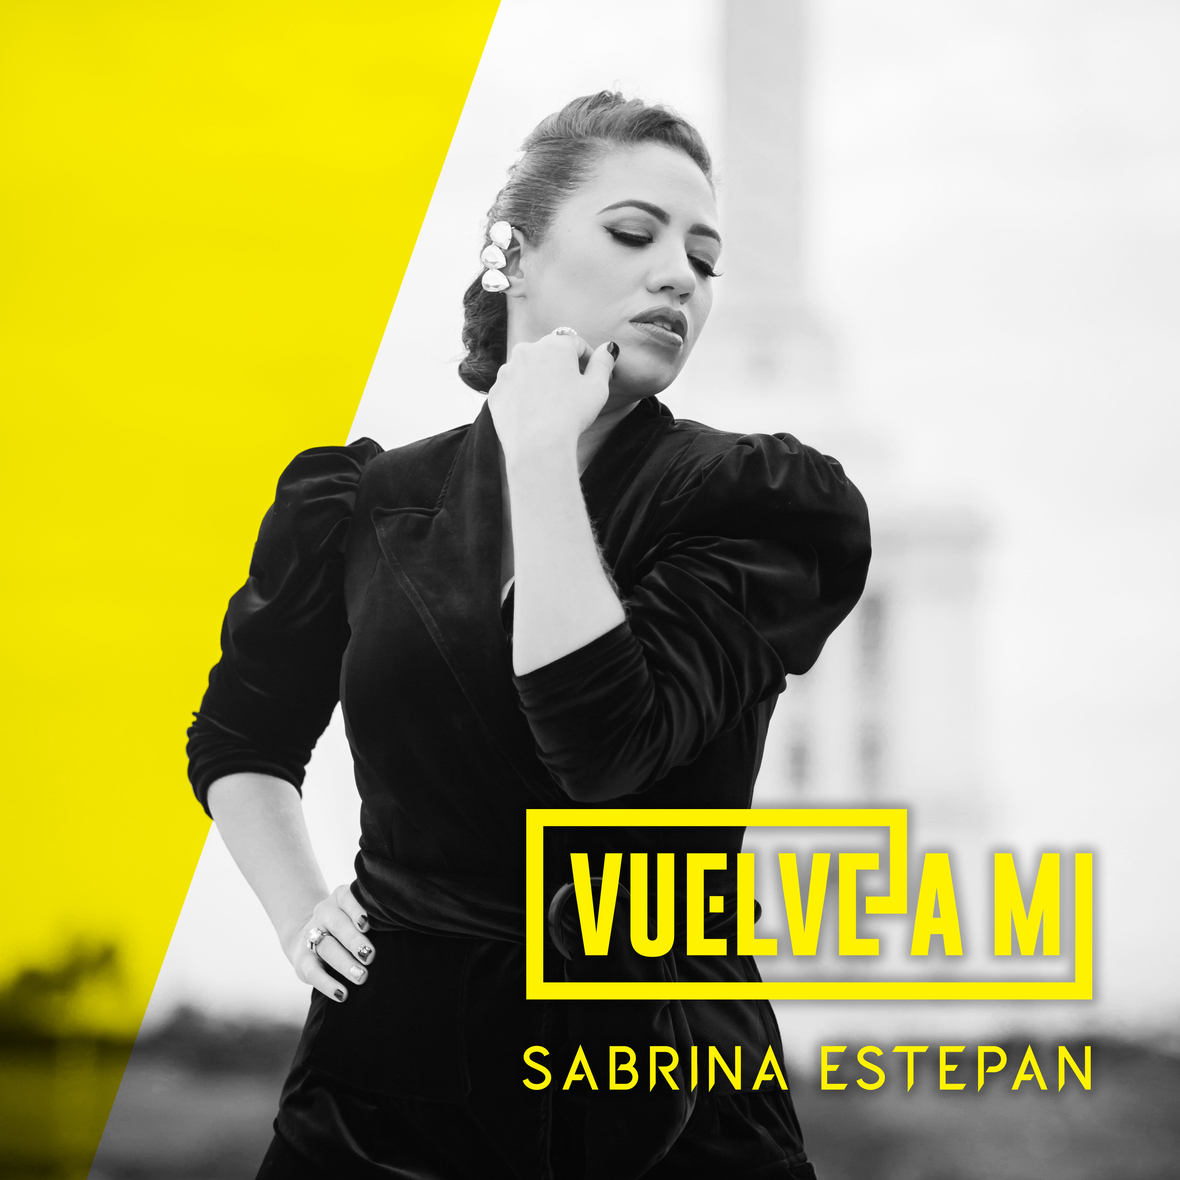 Sabrina Estepan presenta nueva bachata romántica "Vuelve a mí"